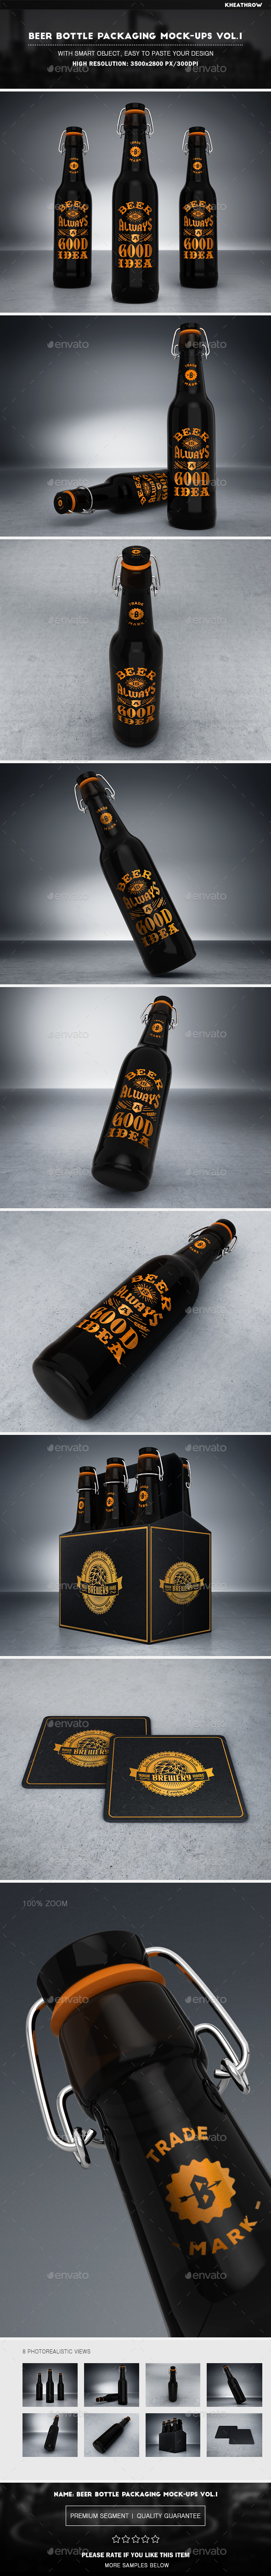 Beer Bottle Packaging Mock-Ups Vol.1